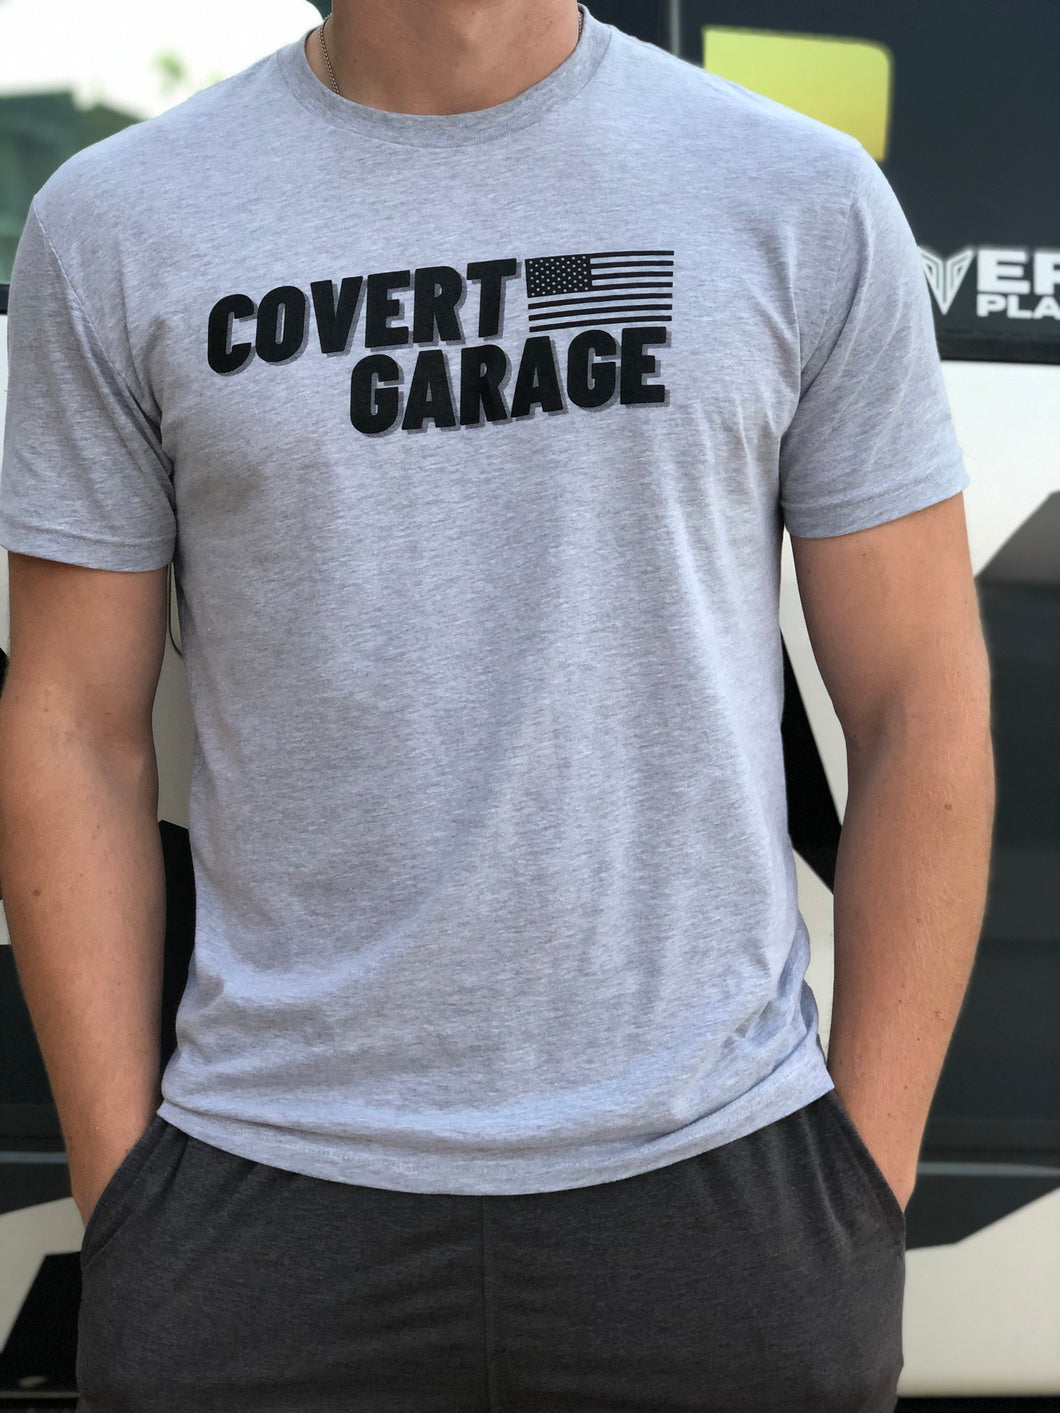 Covert Garage Shirt